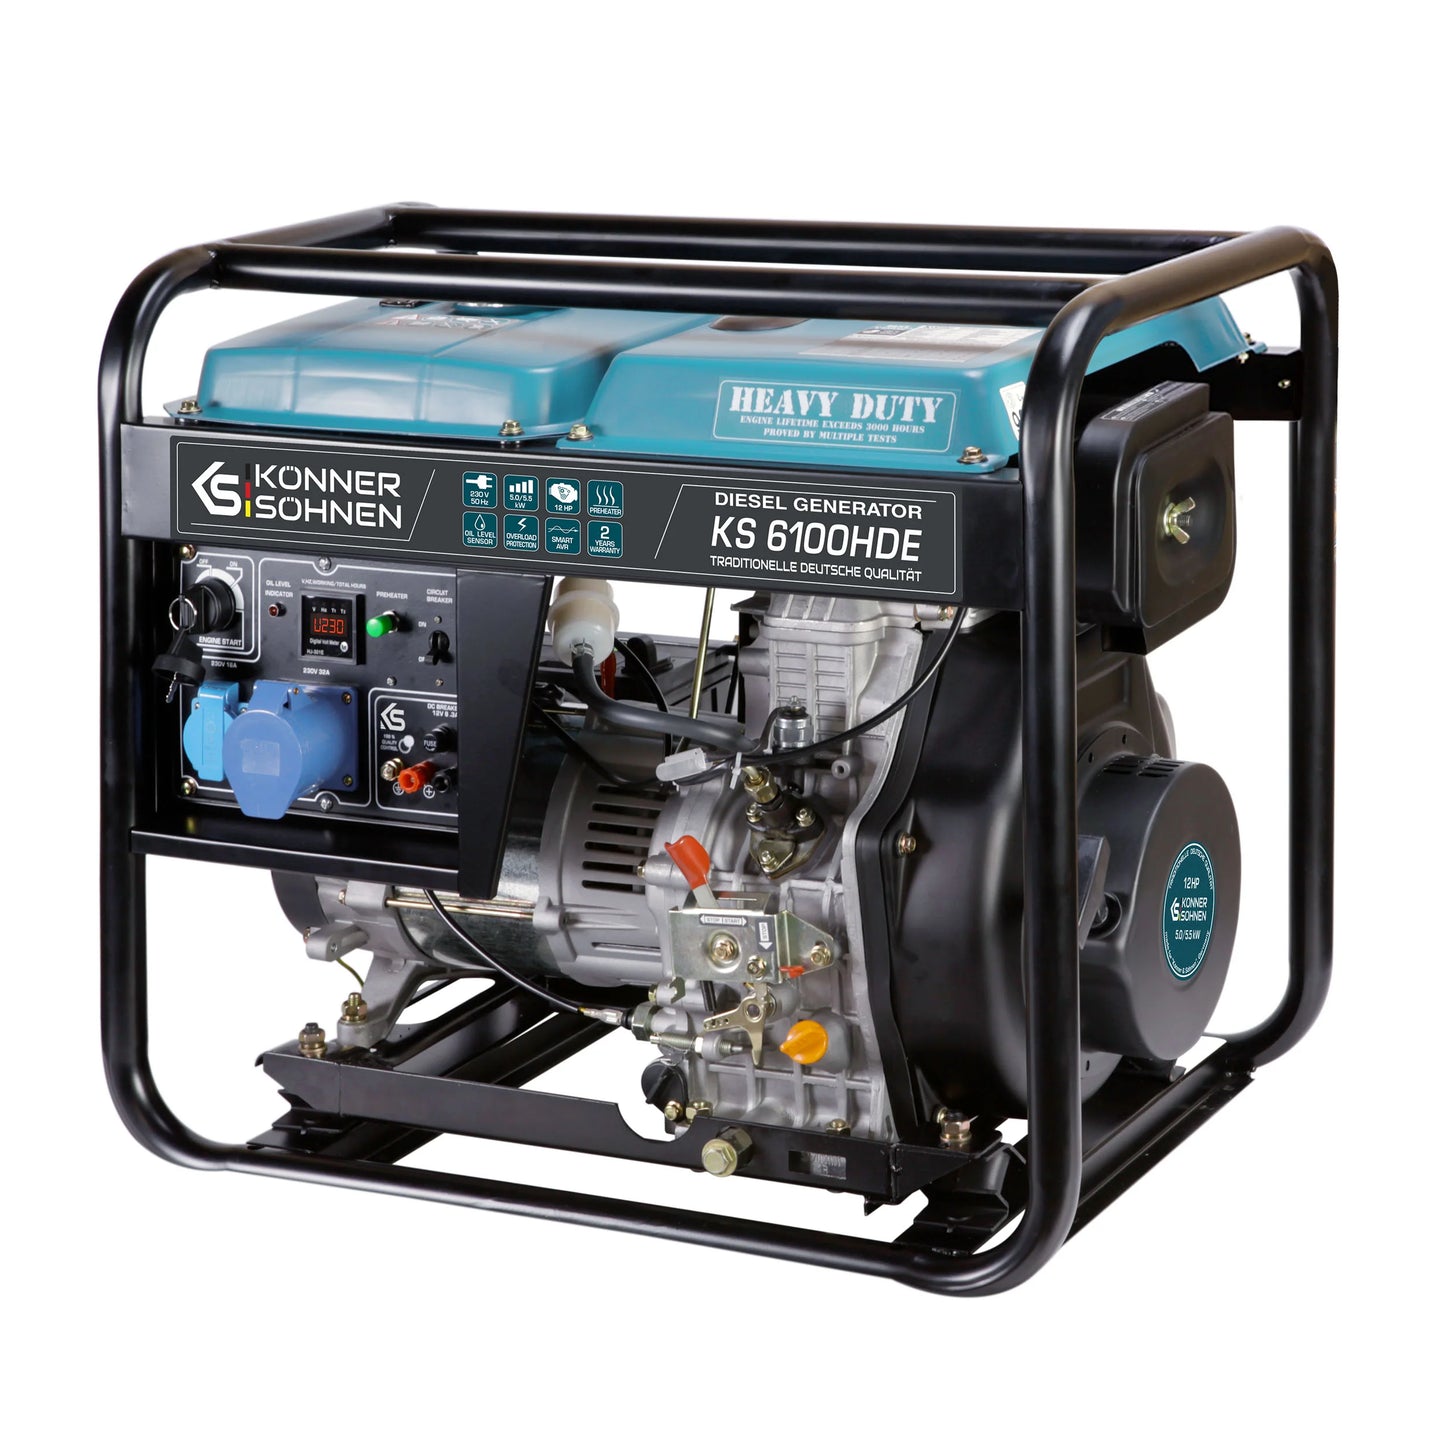 Diesel generator KS 6100HDE